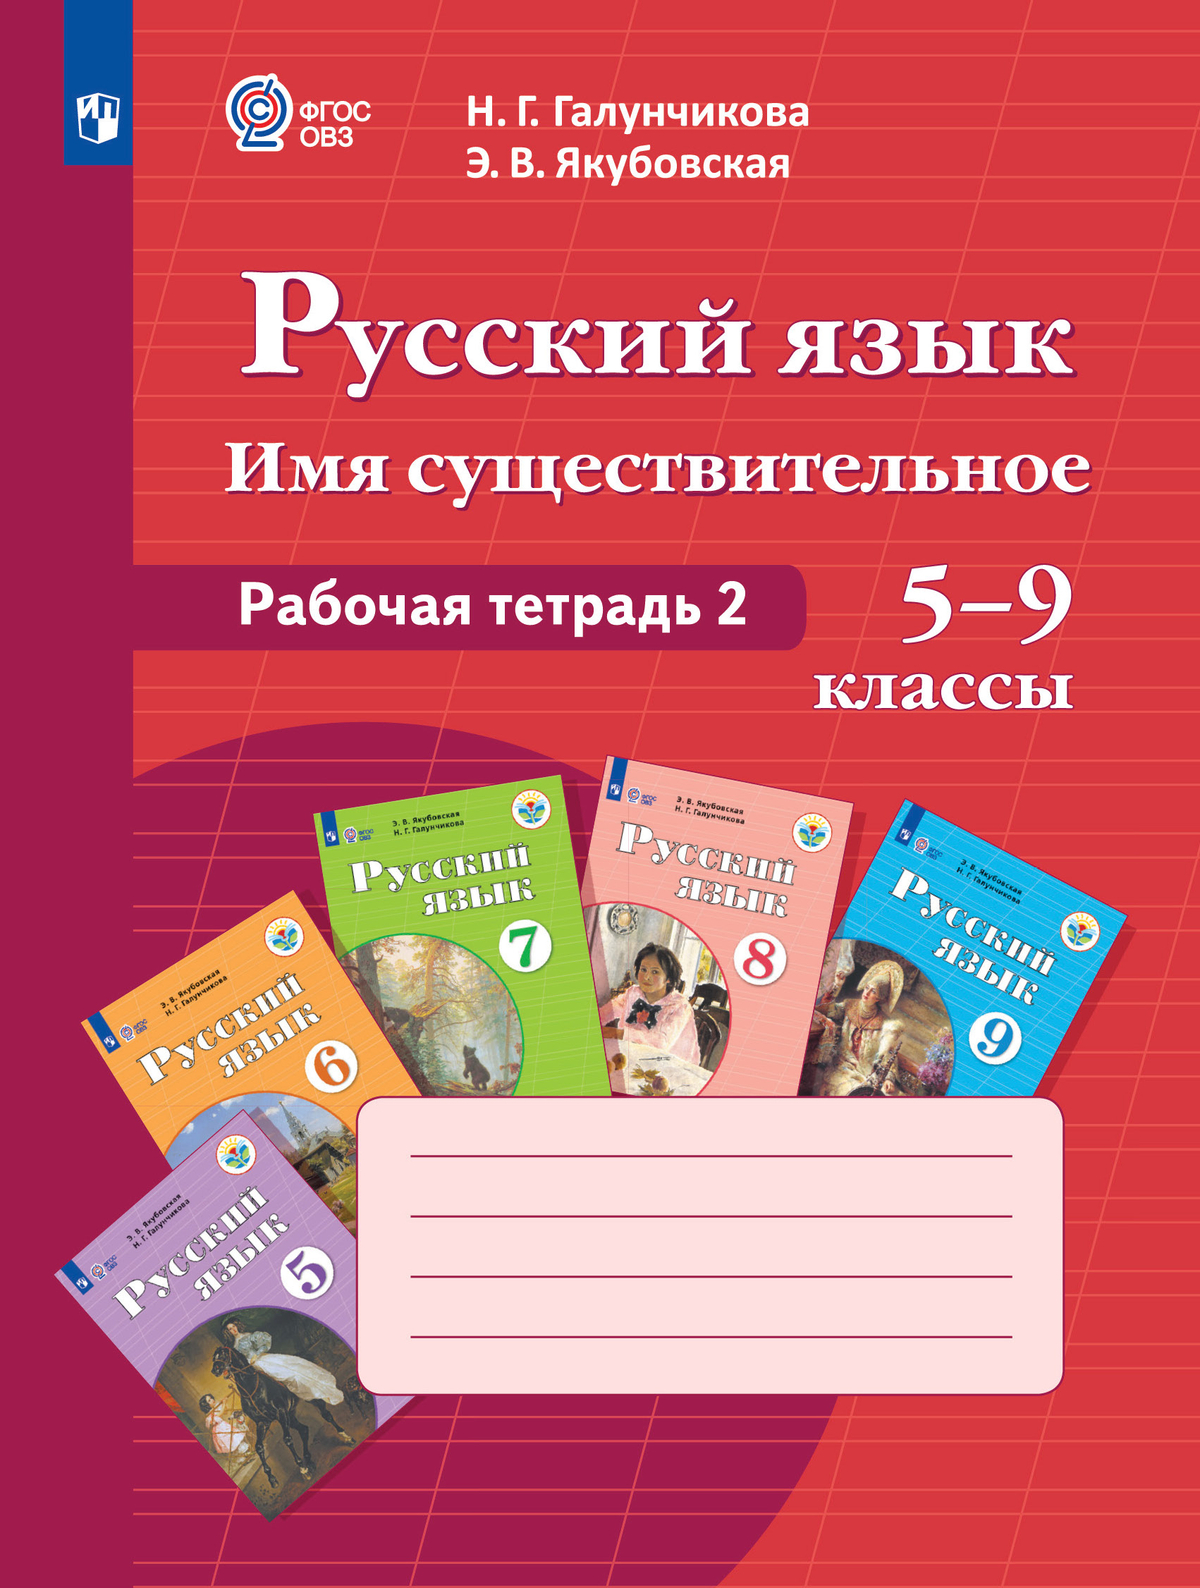 Русский язык. Имя существительное. 5-9 классы. Рабочая тетрадь 2 (для обучающихся с интеллектуальными нарушениями) 1